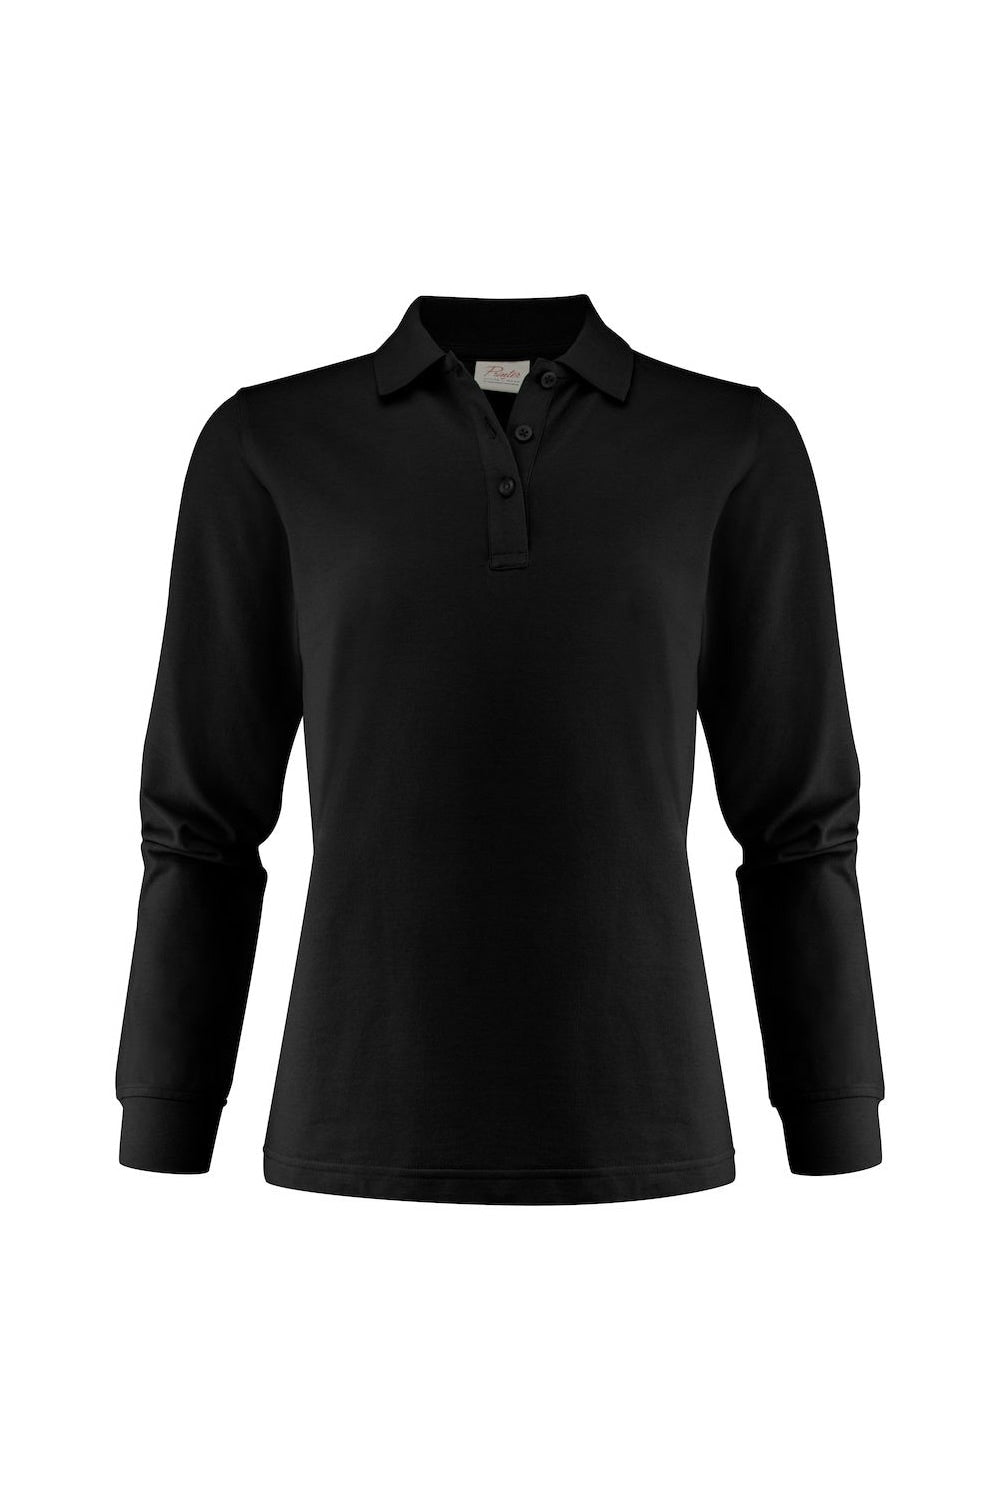 Printer Womens/Ladies Surf Pro T-Shirt (Black)